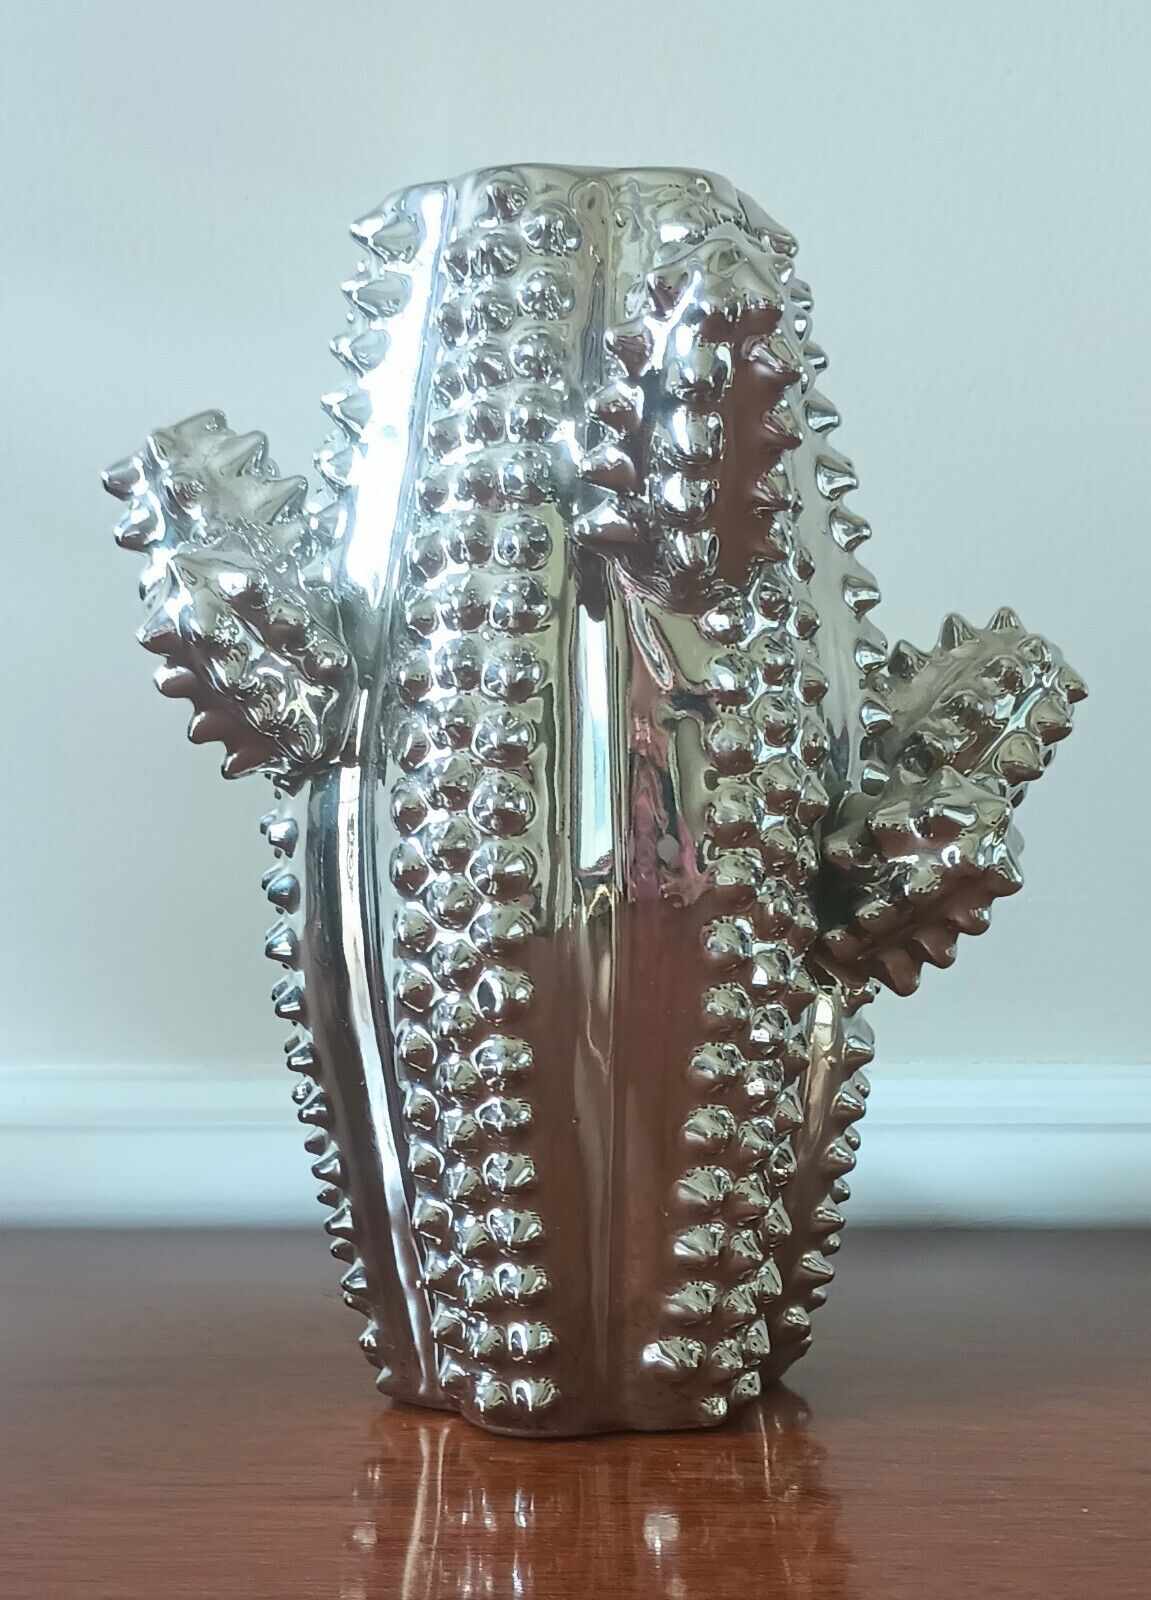 Cactus Vase Ceramic Metallic Chrome Decor Vase 8” Tall